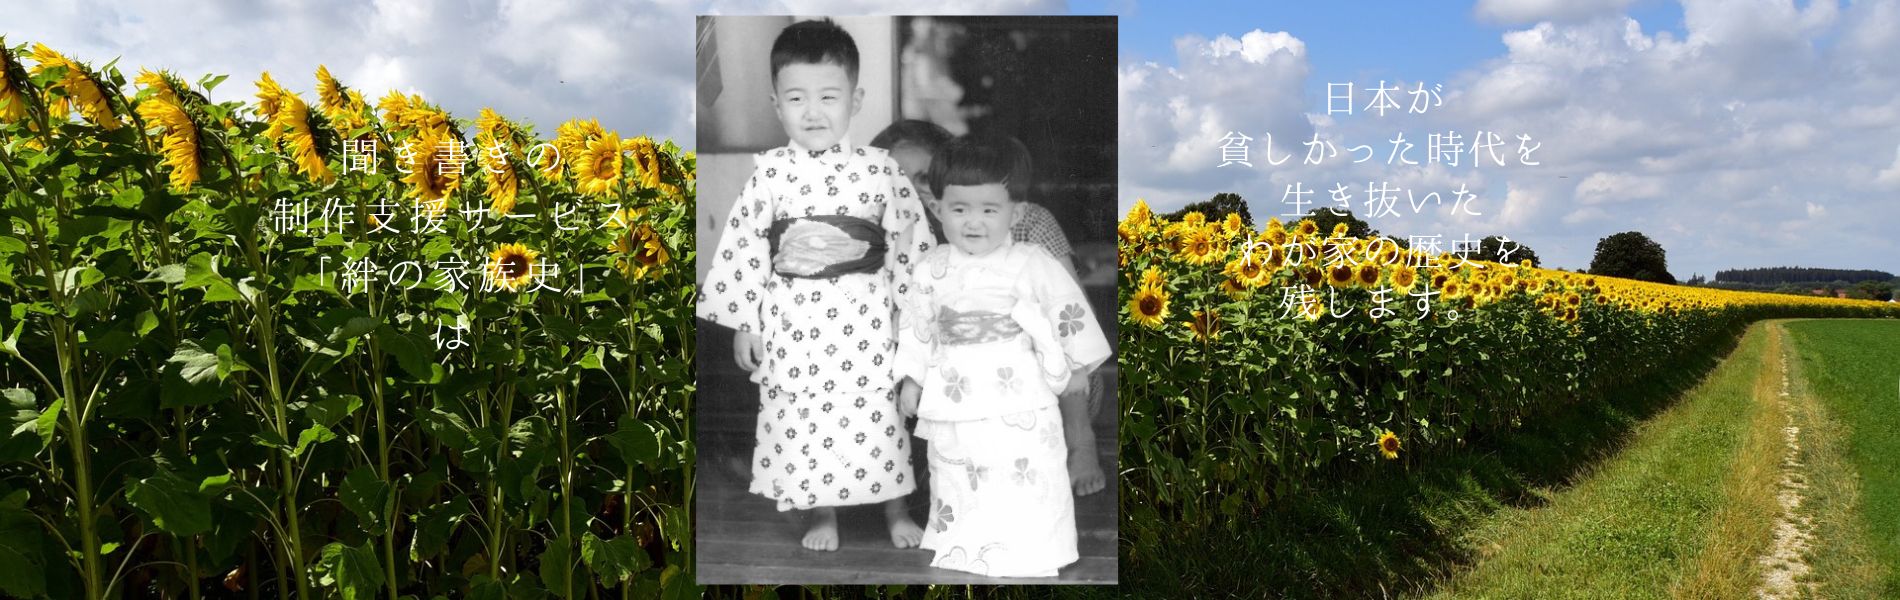 聞き書きの制作支援サービス「絆の家族史」は、日本が貧しかった時代を生き抜いたわが家の歴史を残します。